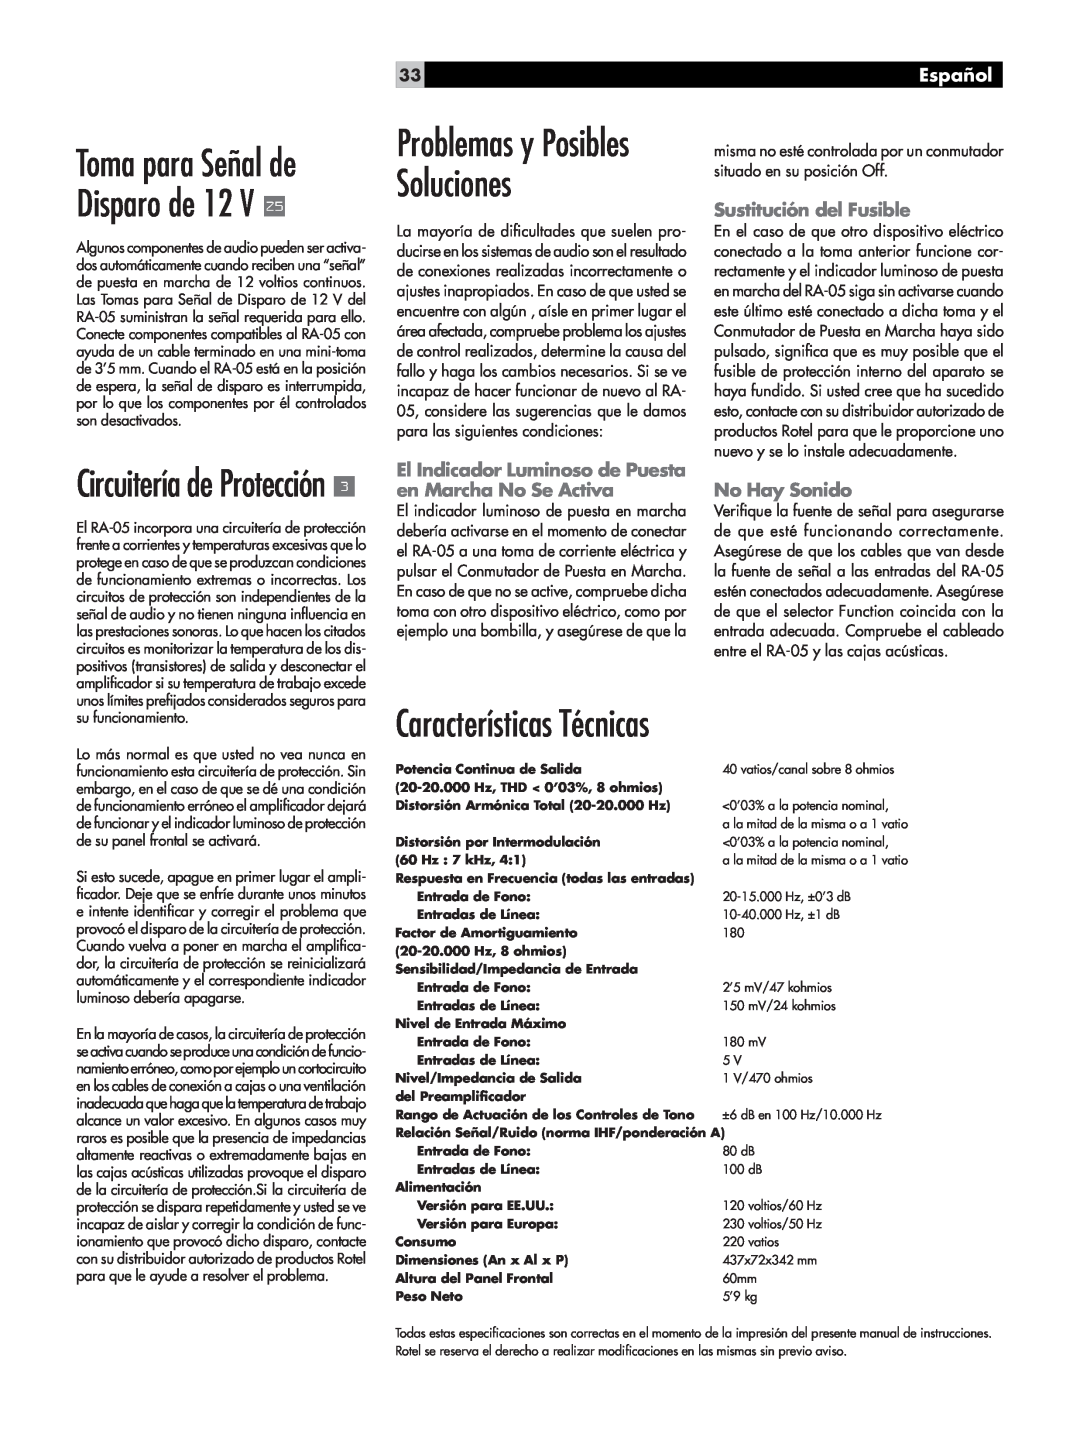 Rotel RA-05 Características Técnicas, Circuitería de Protección, Problemas y Posibles Soluciones, Español, No Hay Sonido 